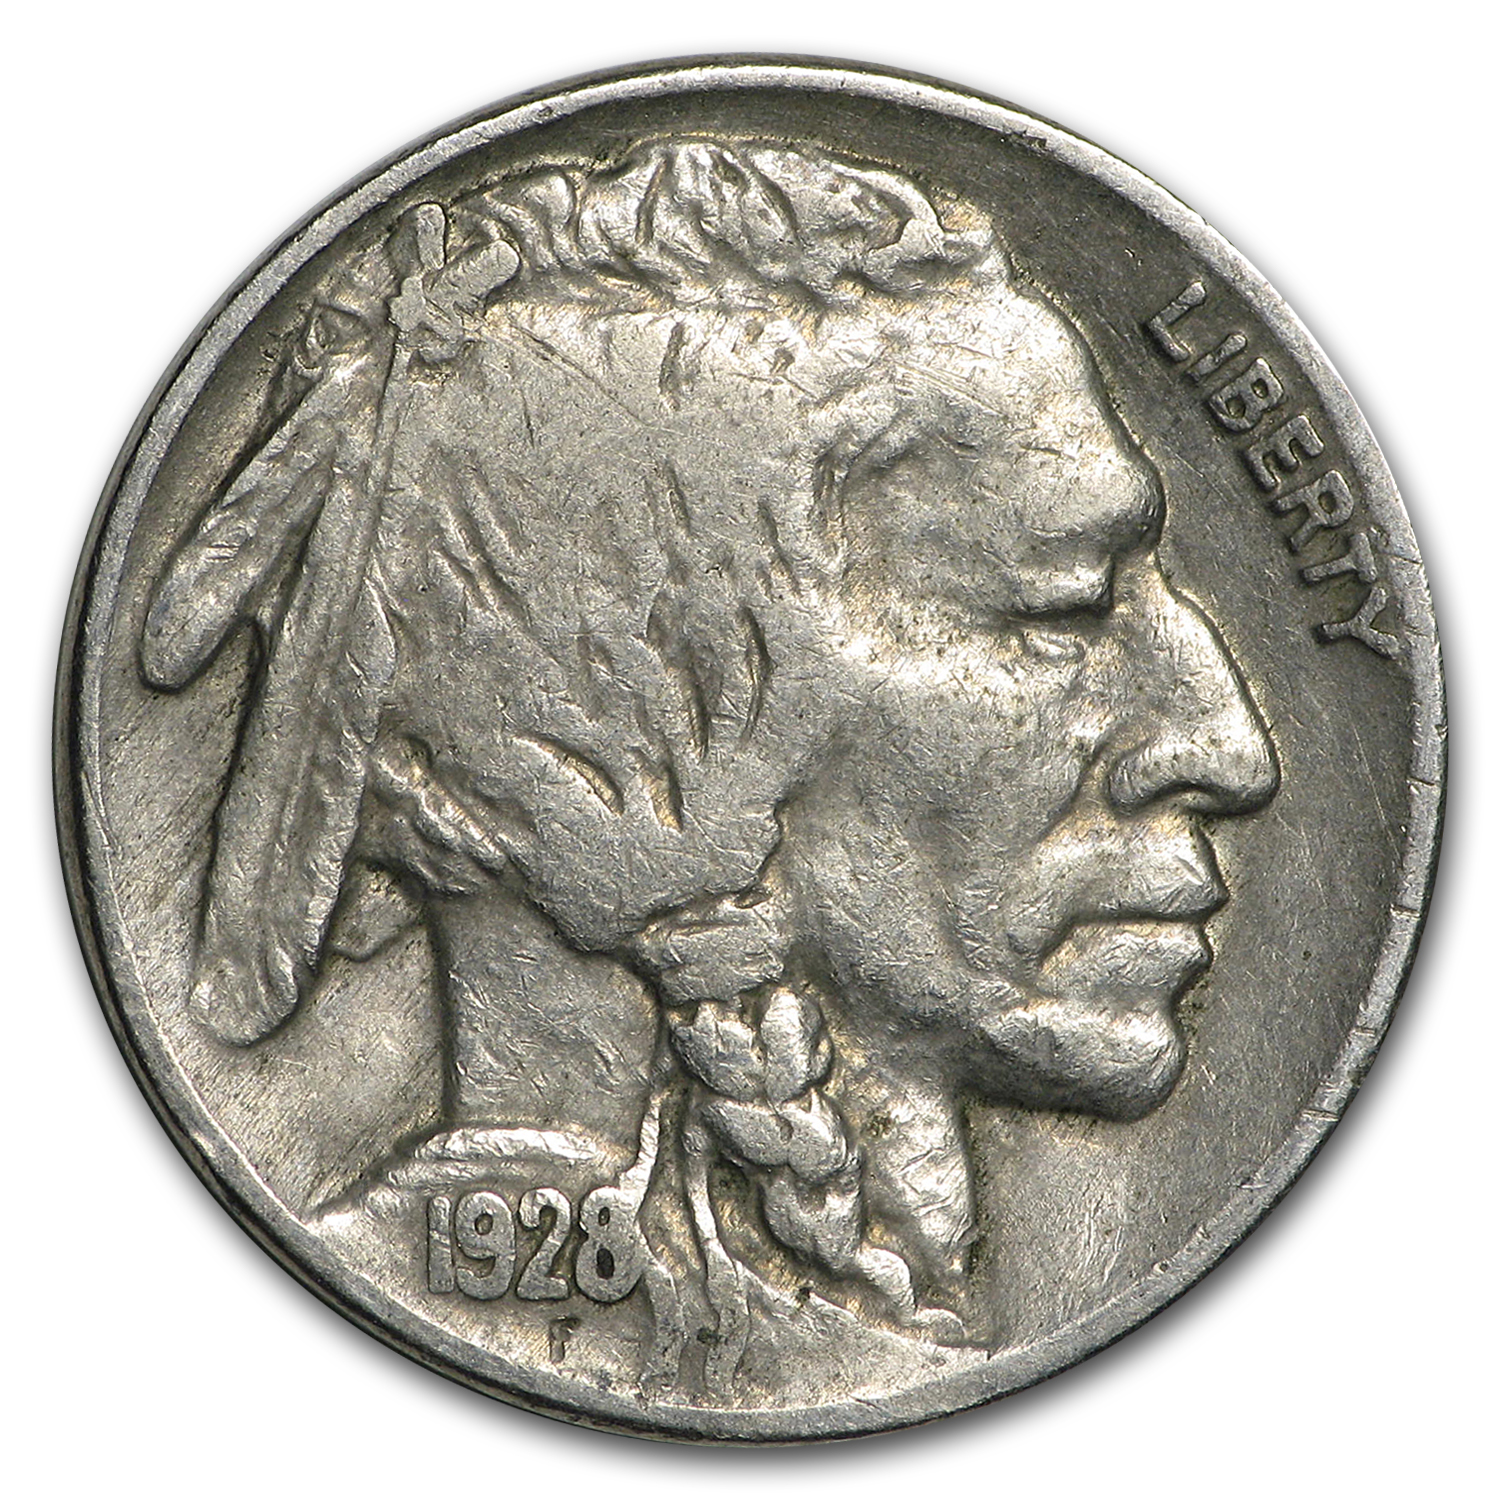 Buy 1928 Buffalo Nickel XF